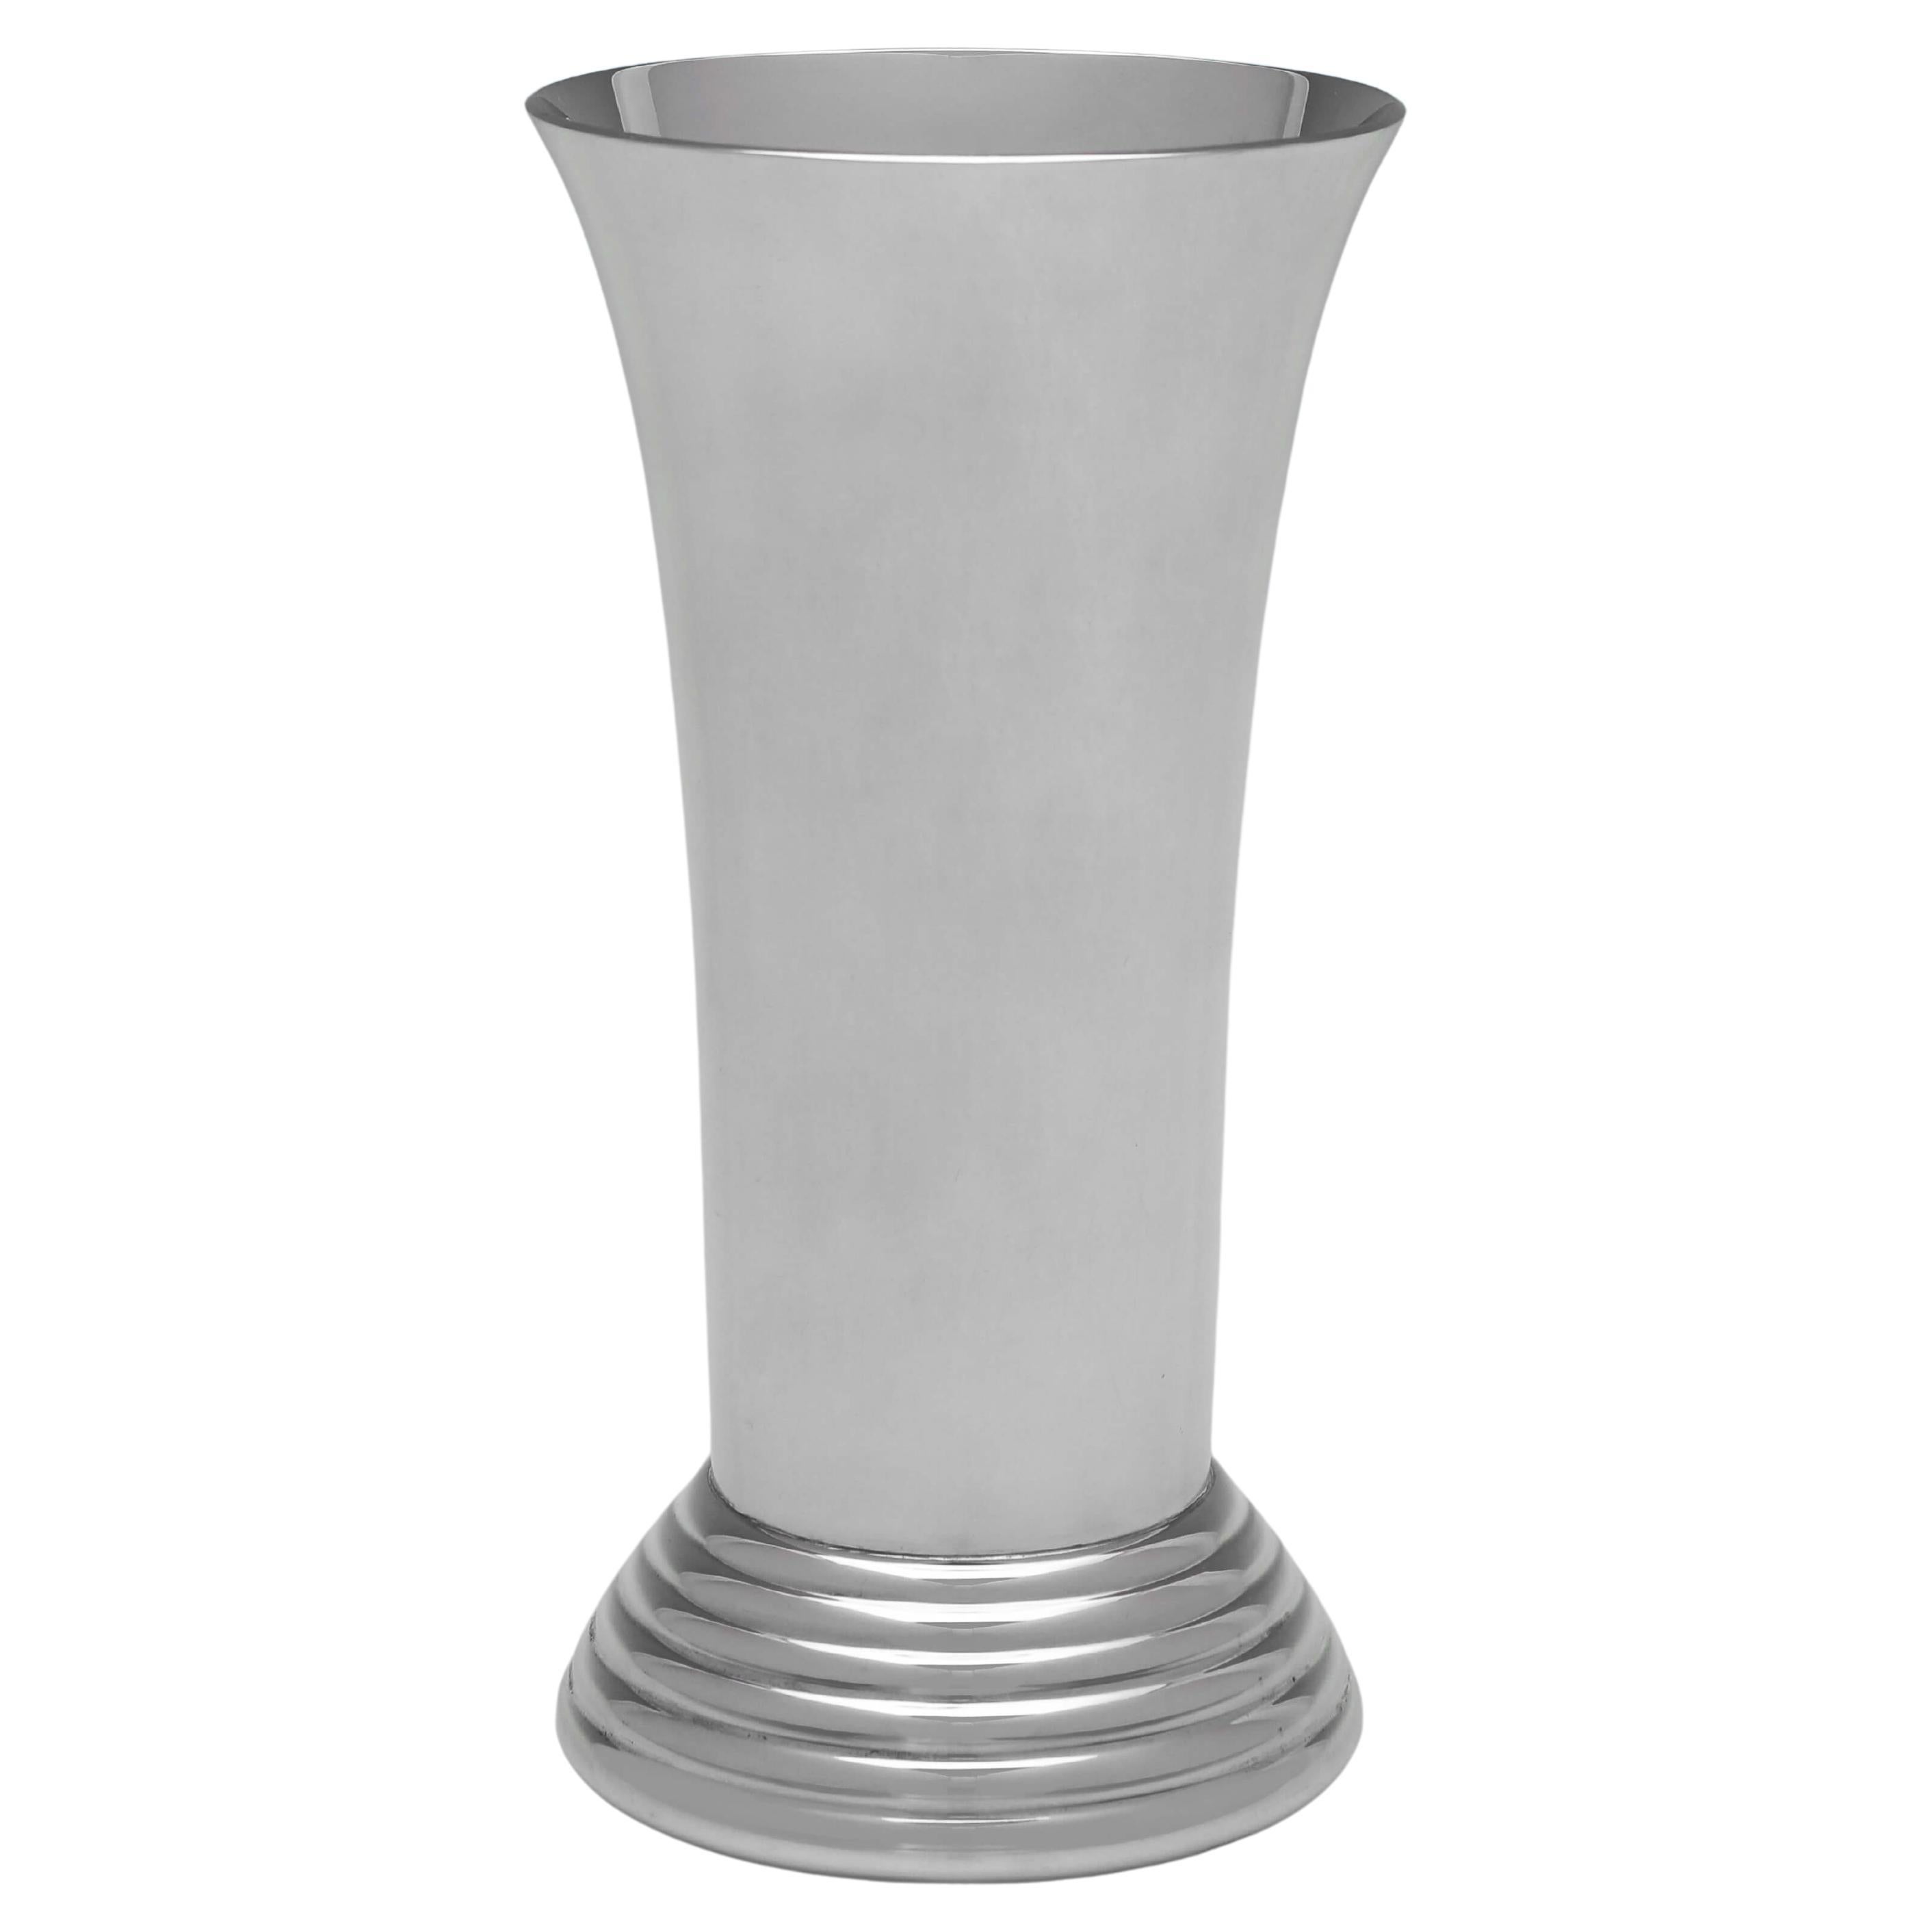 Garrard & Co. Modernist Sterling Silver Vase - Hallmarked in 1997 For Sale